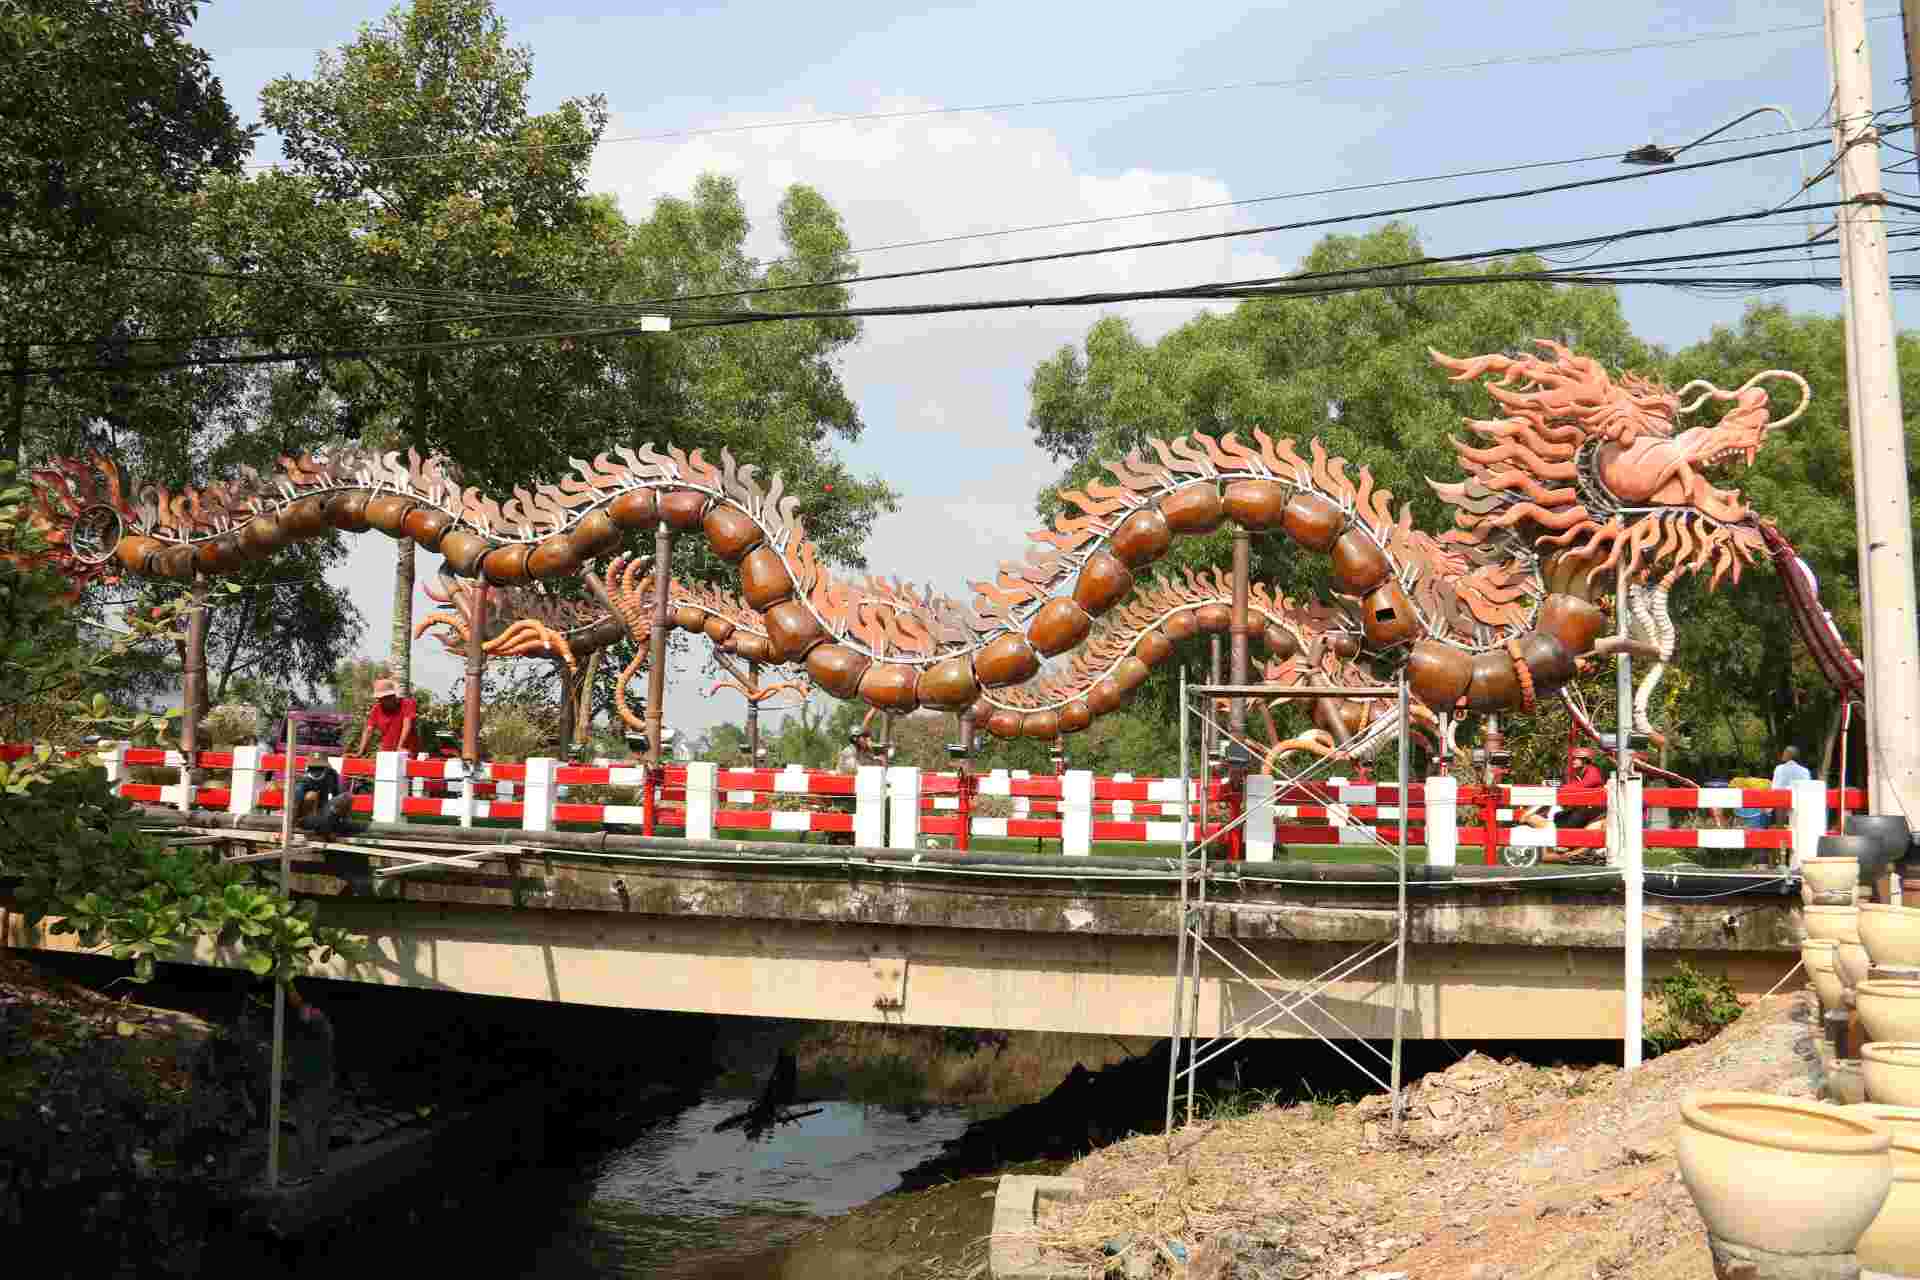 Cặp linh vật được đặt ở đường Hồ Văn Cống dẫn vào những làng nghề truyền thống ở phường Tương Bình Hiệp, thành phố Thủ Dầu Một, tỉnh Bình Dương.